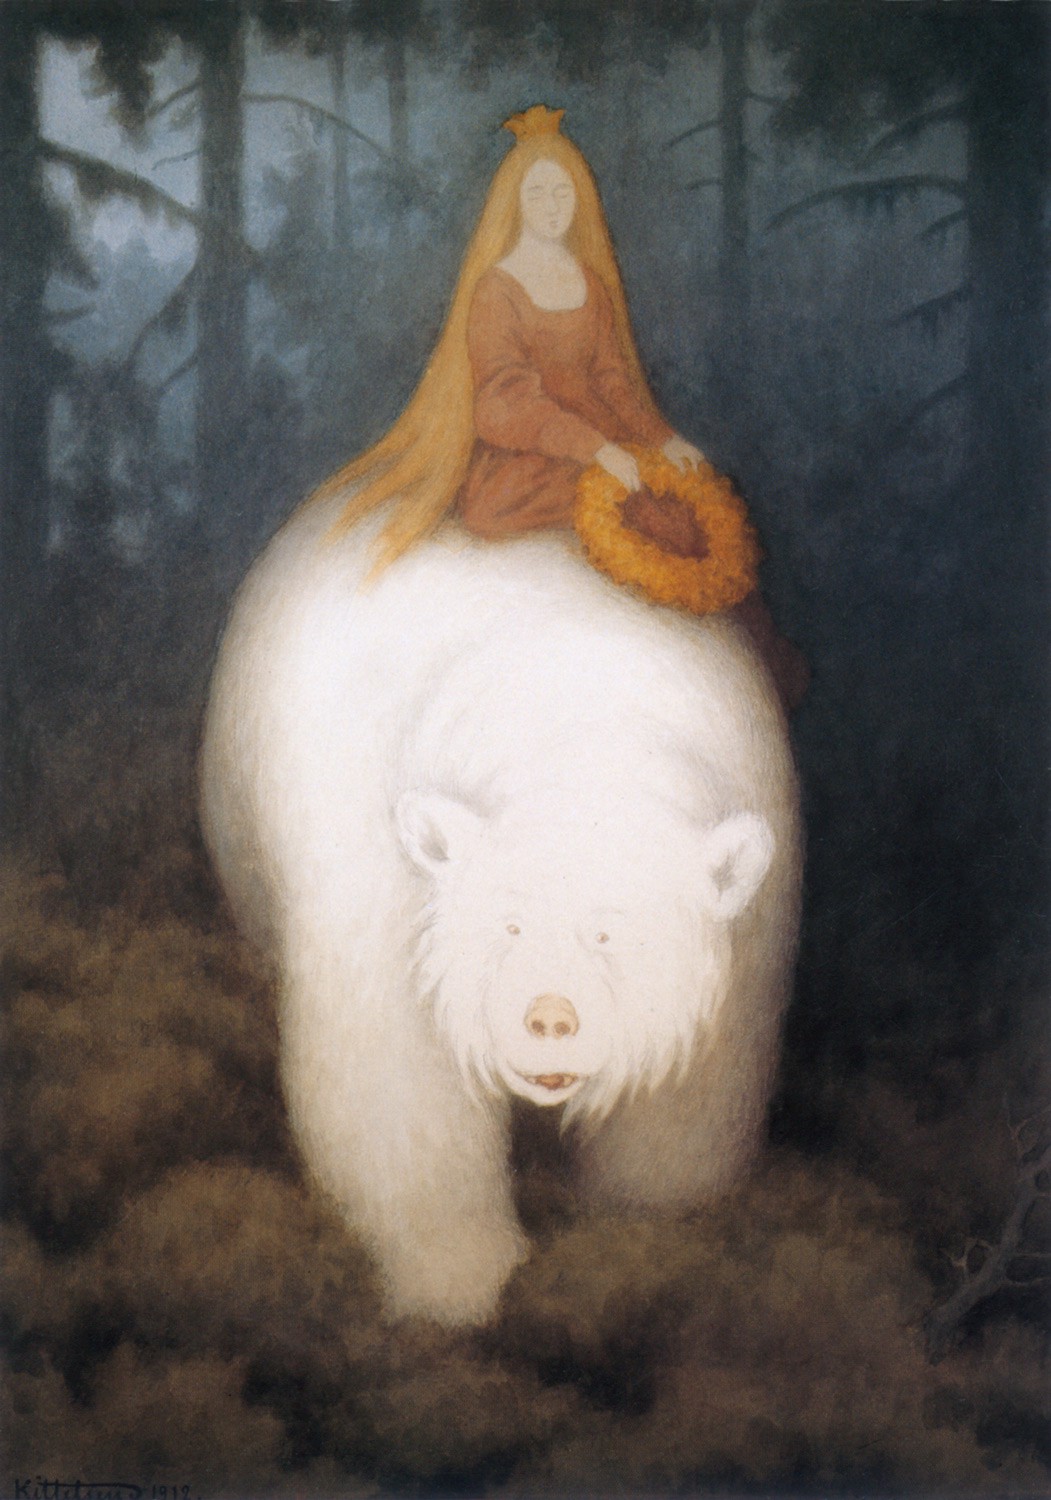 The Norwegian fairy tale White-Bear-King-Valemon painted by Norwegian artist Theodor Kittelsen